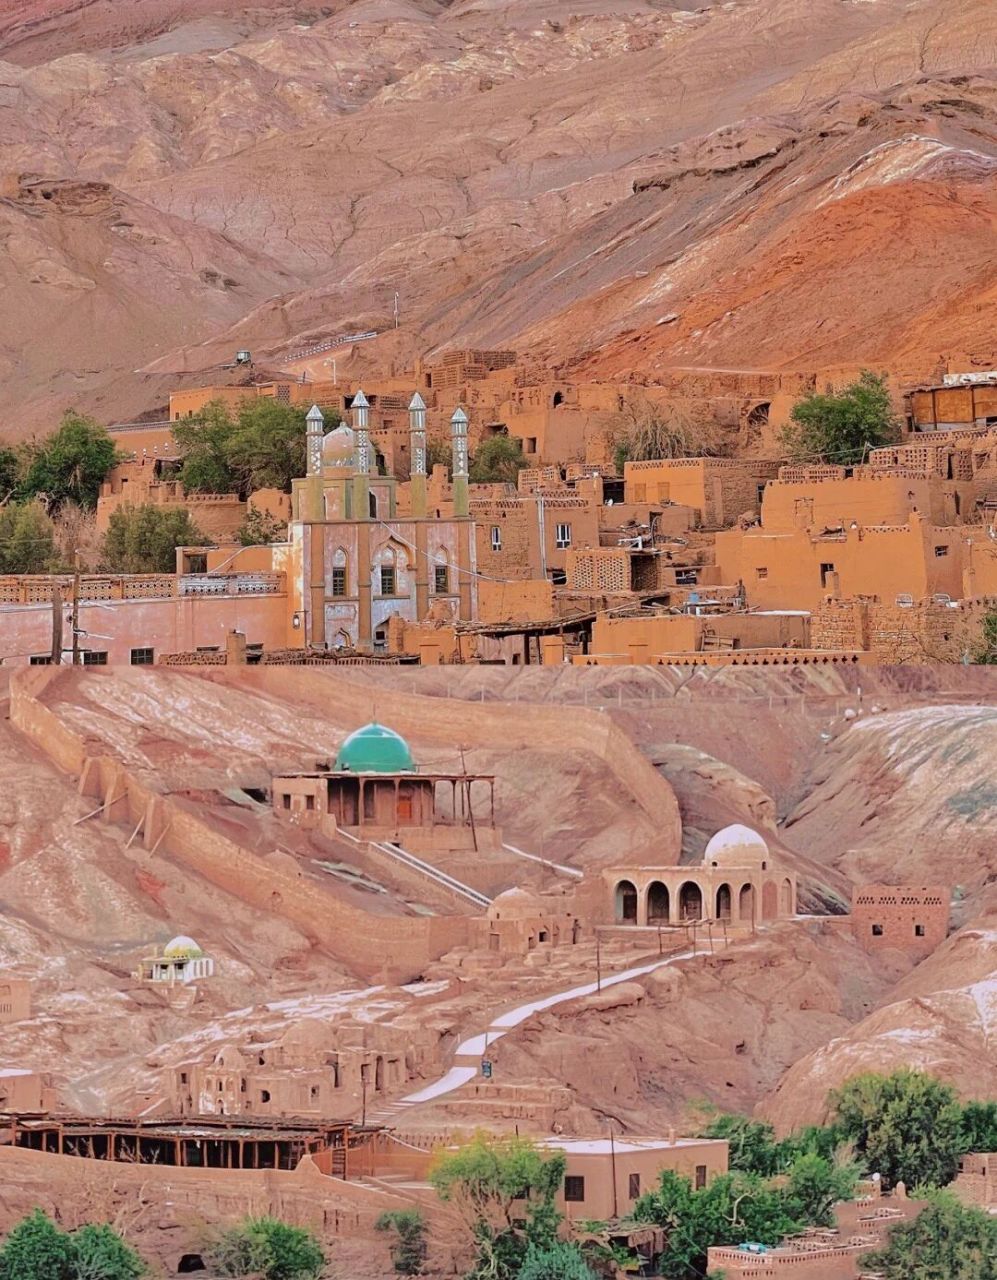 98吐峪沟大峡谷的麻扎村是新疆现存最早的仍在使用的生土居民建筑